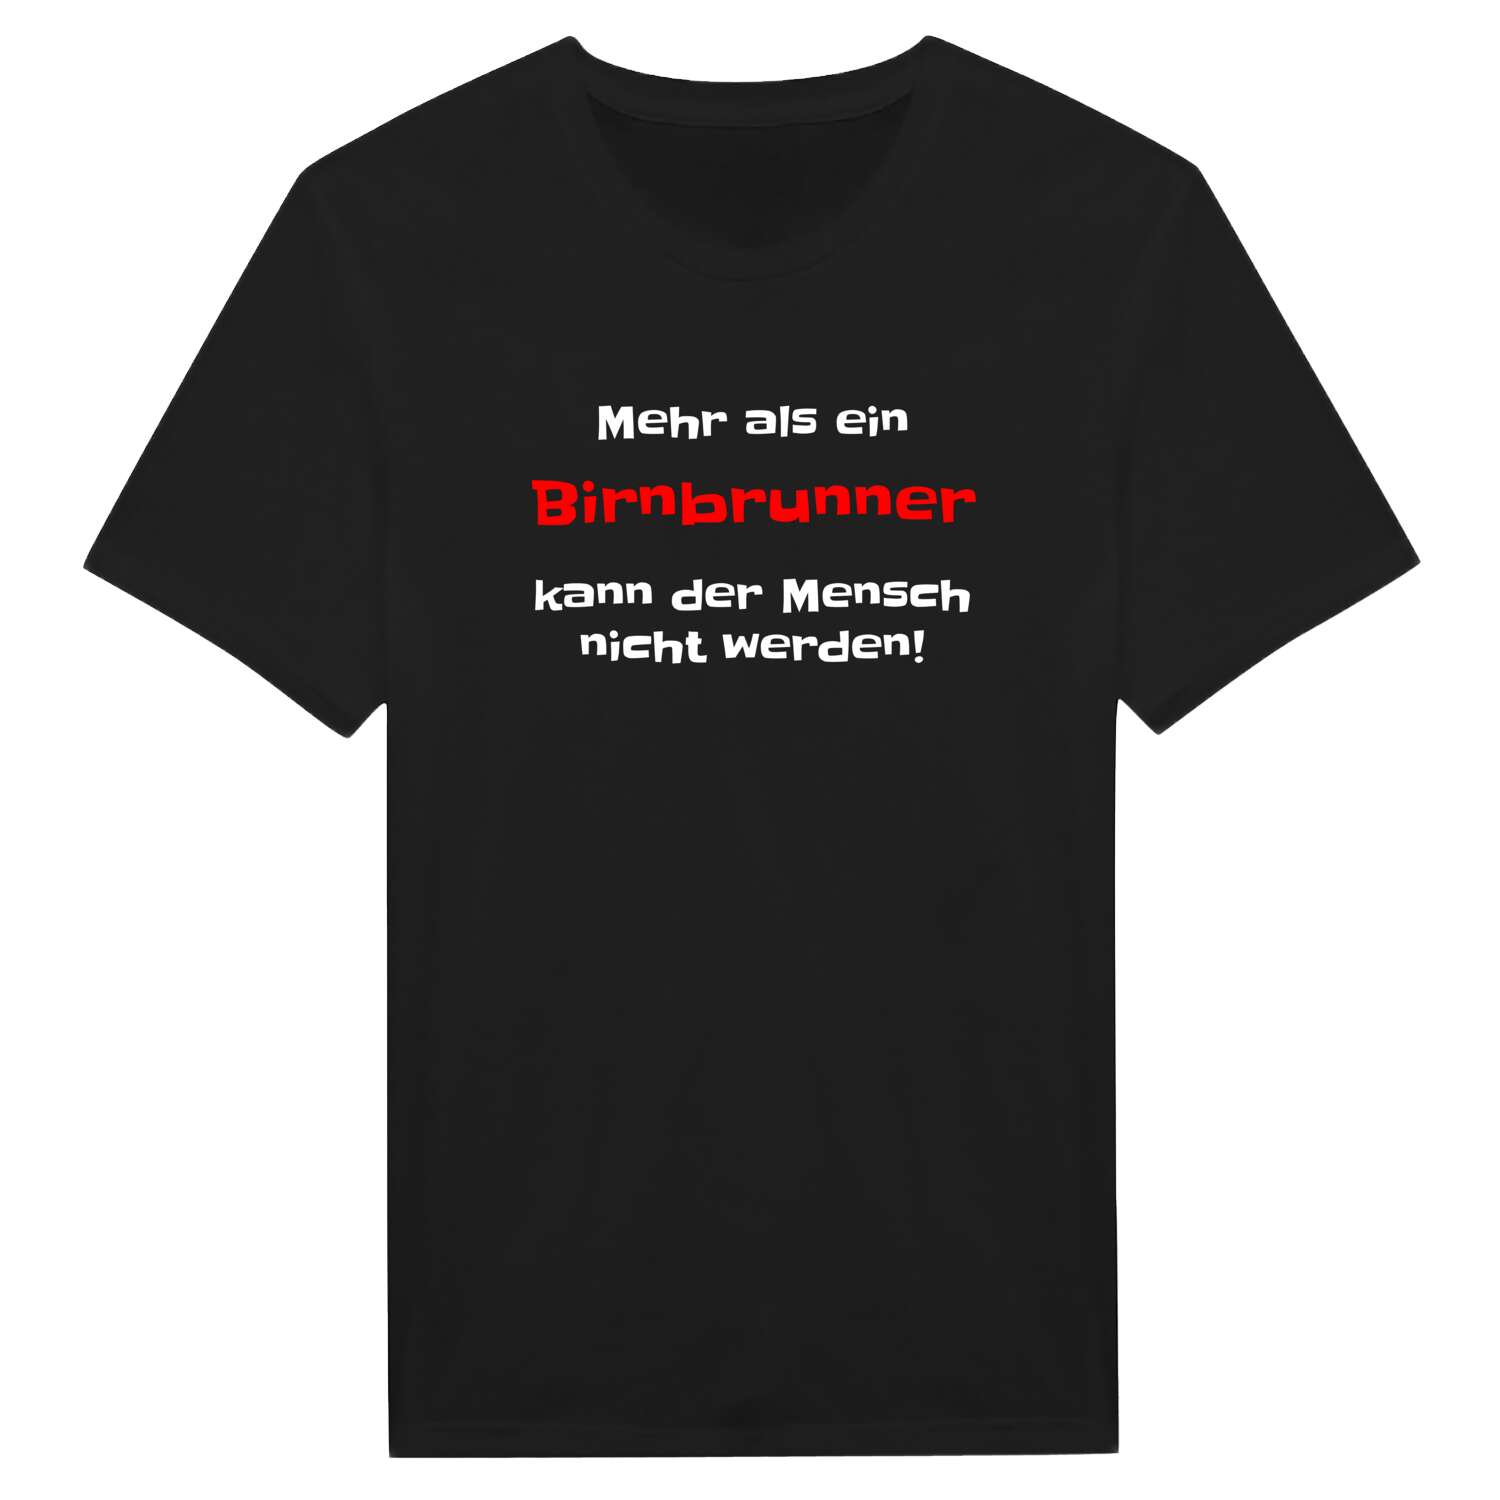 Birnbrunn T-Shirt »Mehr als ein«